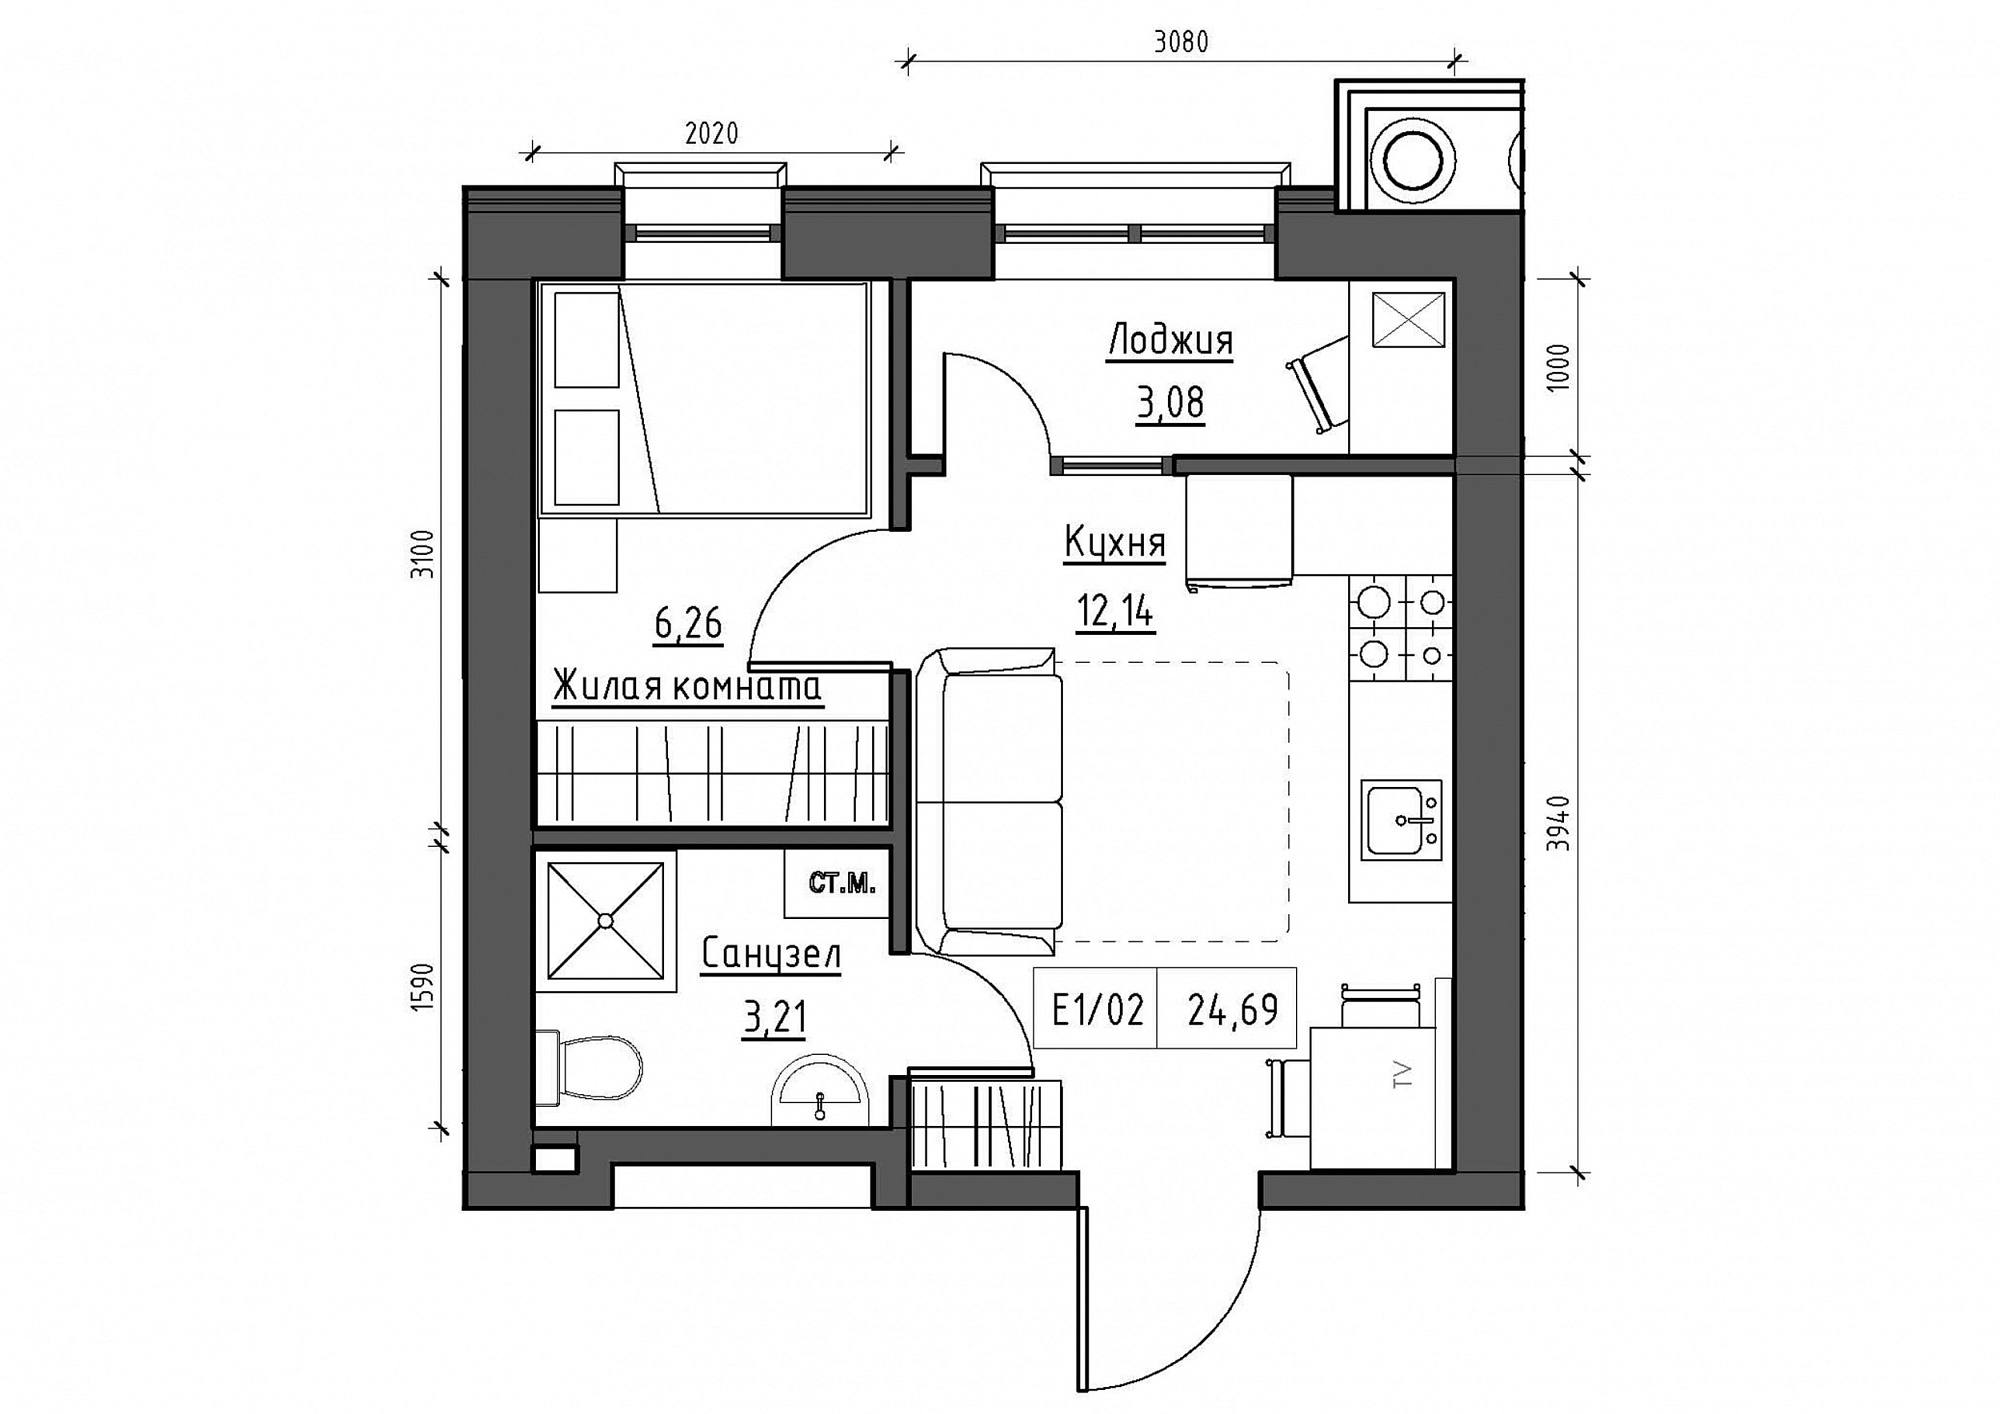 Планування 1-к квартира площею 24.69м2, KS-011-04/0014.